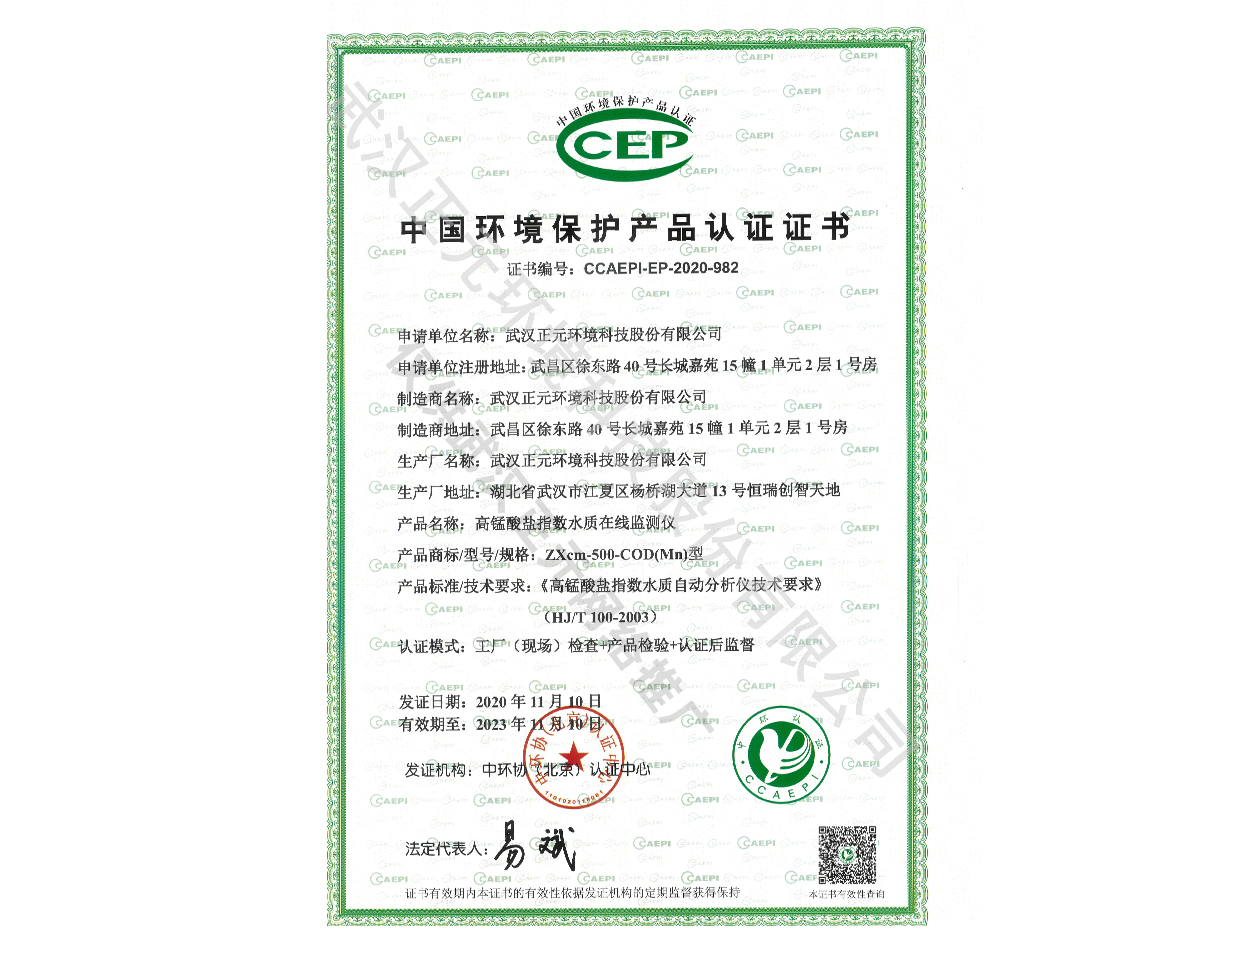 COD高猛酸盐指数环保认证